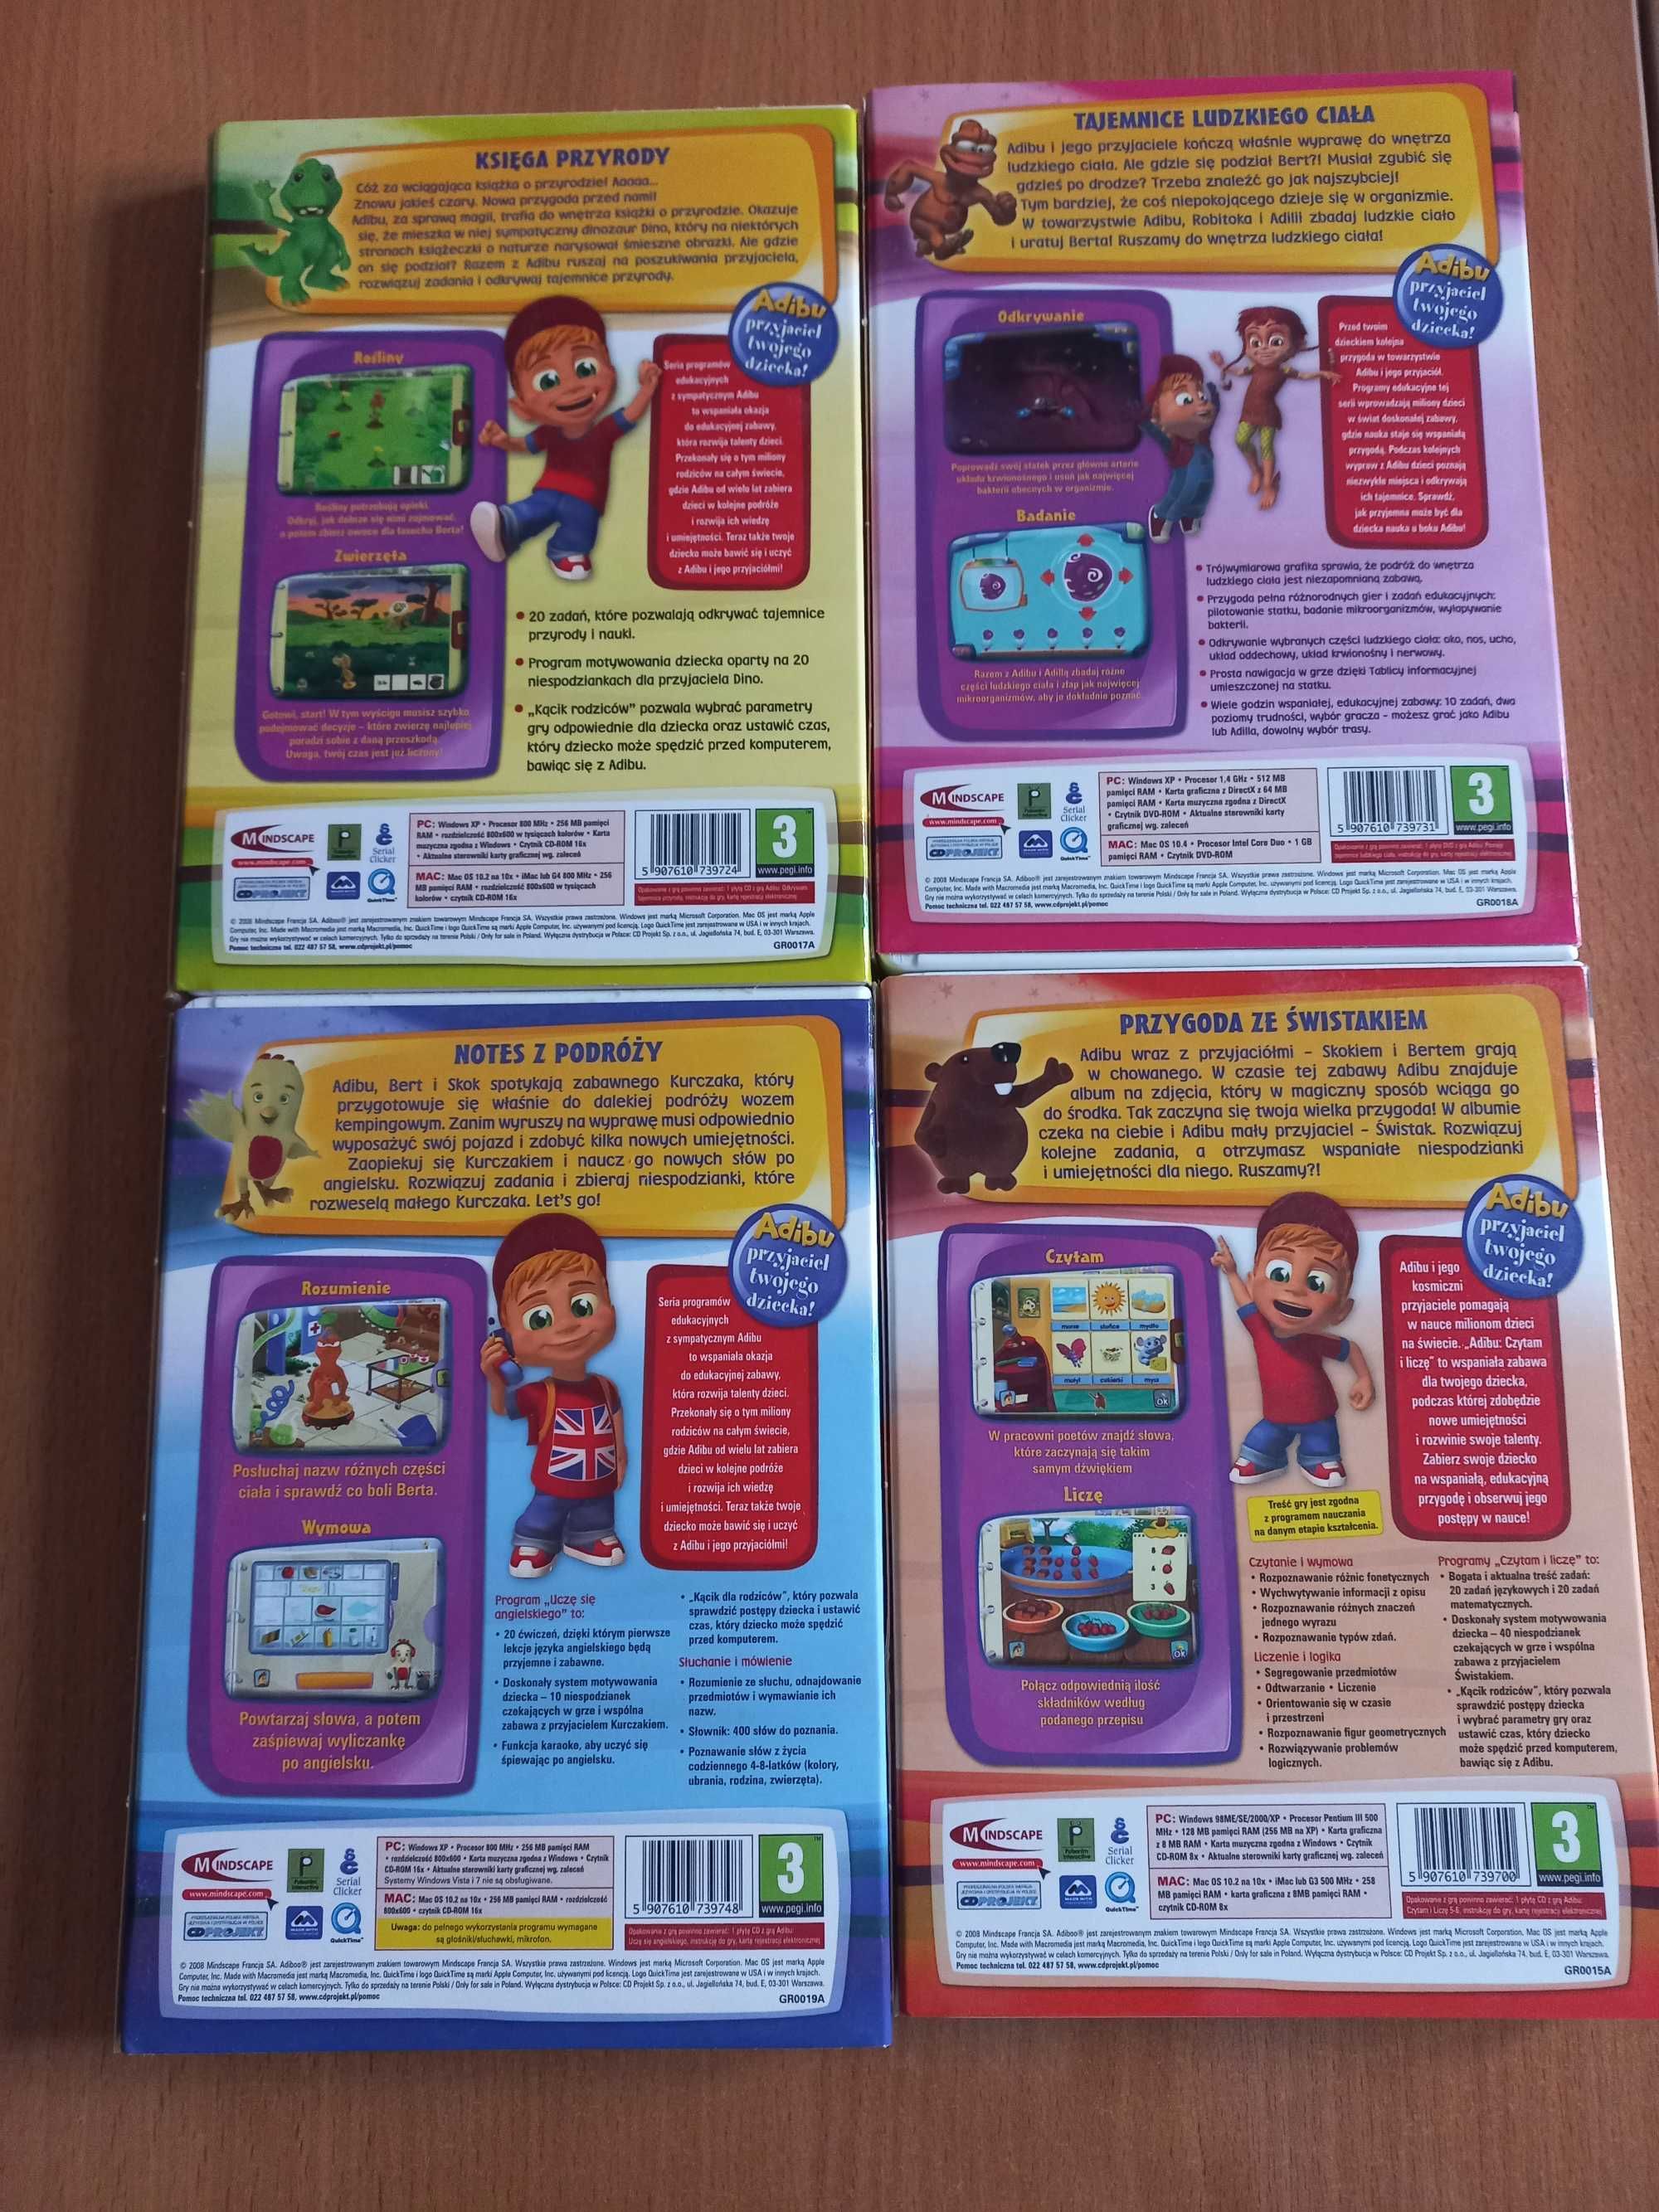 Gry edukacyjne dla dzieci z serii Adibu na PC